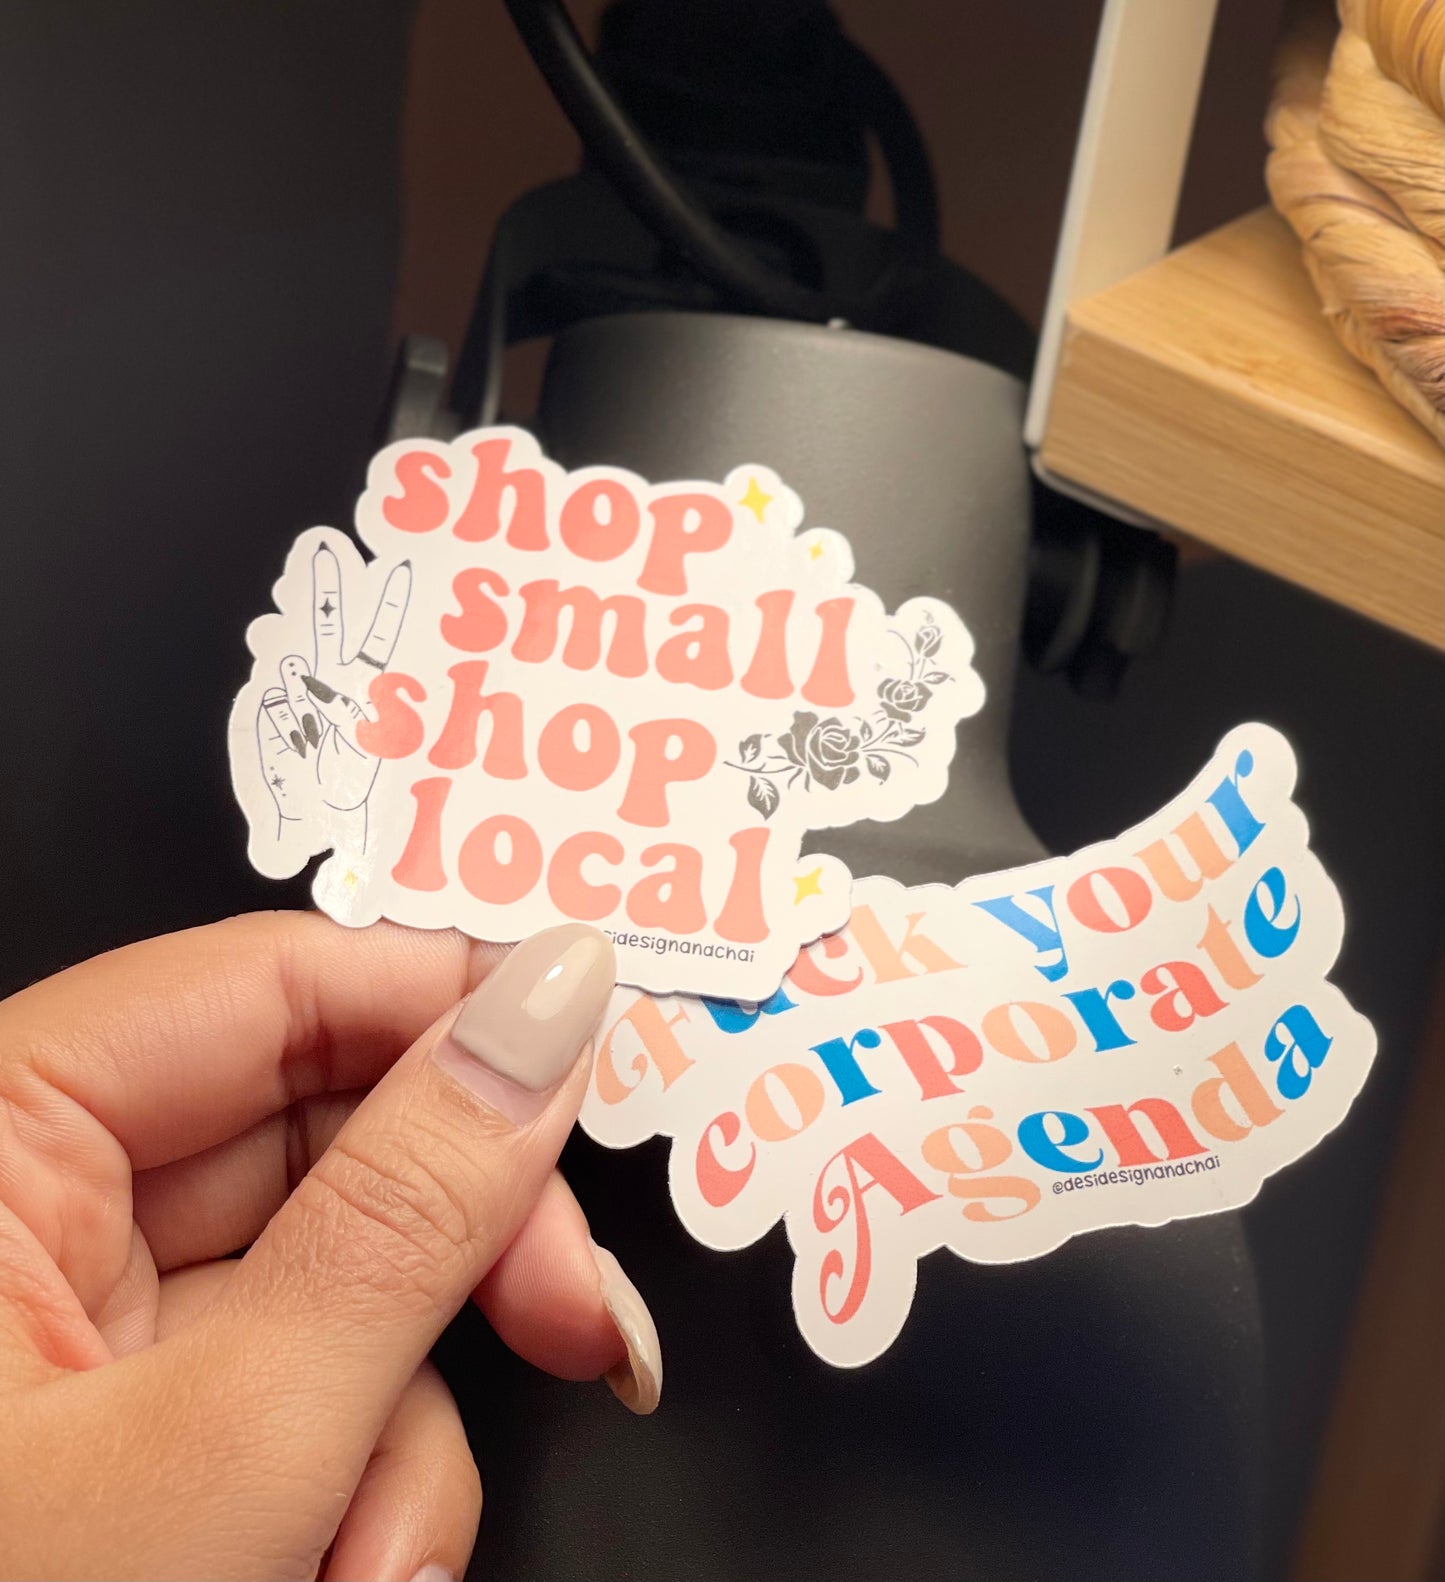 Shop small shop local sticker